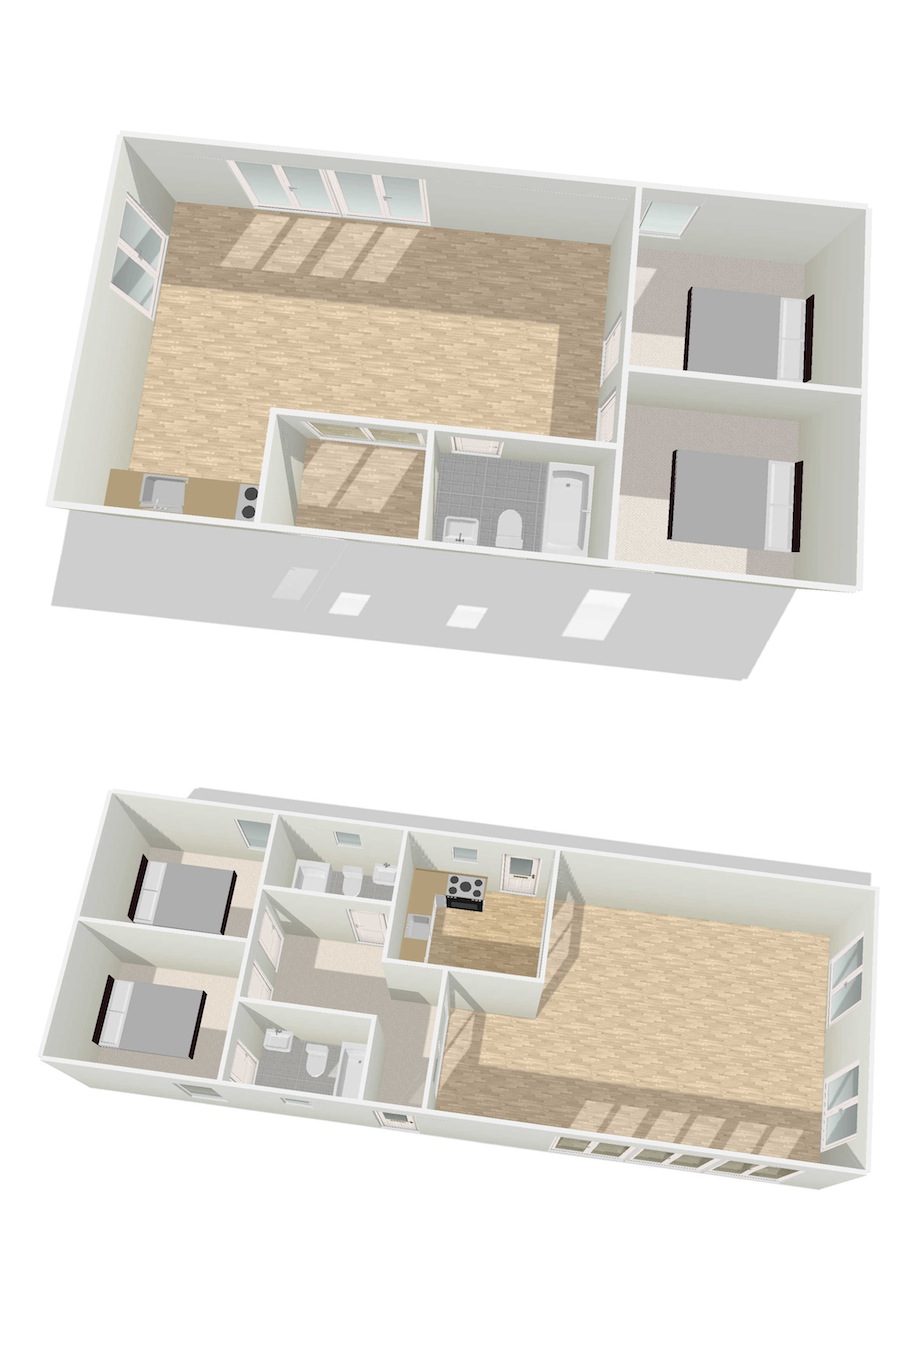 Mobile-Home-Floor-Plans-3d-p3